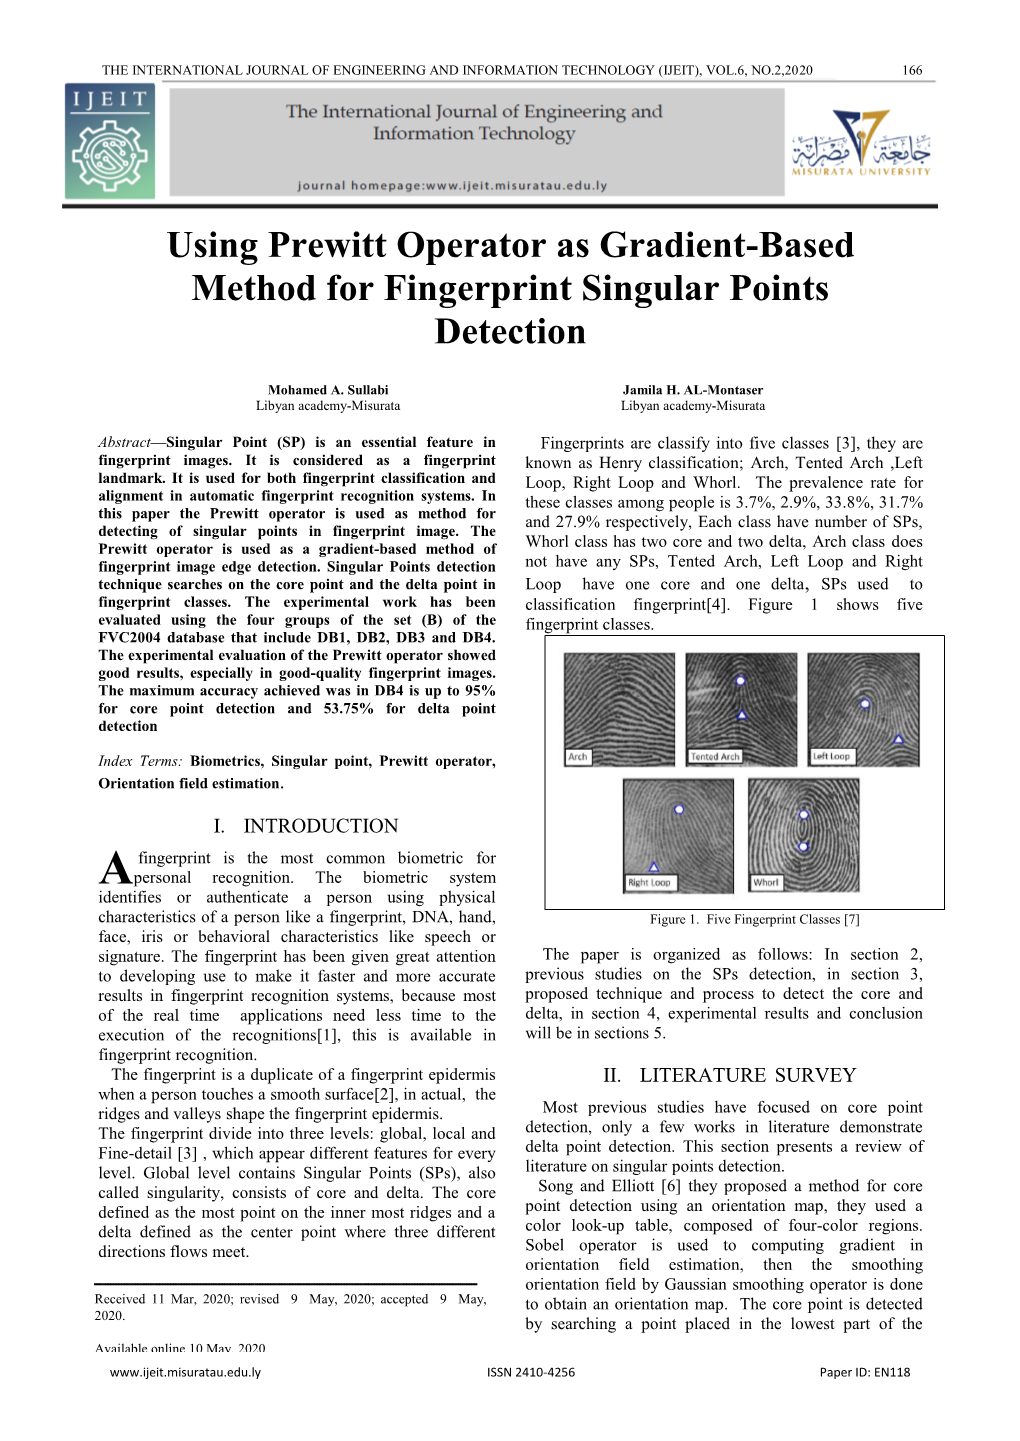 Using Prewitt Operator As Gradient-Based Method for Fingerprint Singular Points Detection